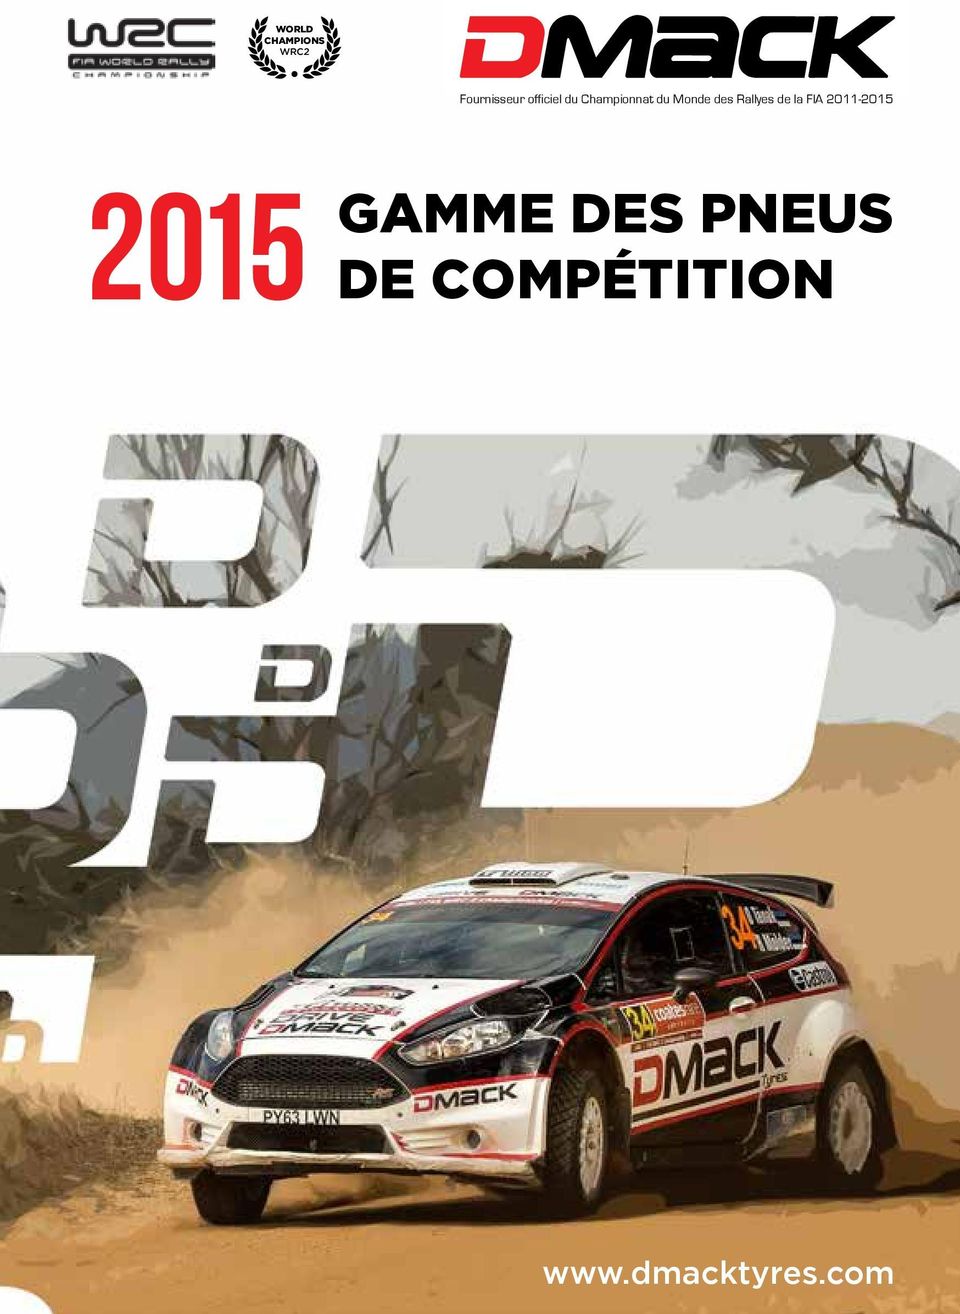 Rallyes de la FIA 2011-2015 GAMME DES